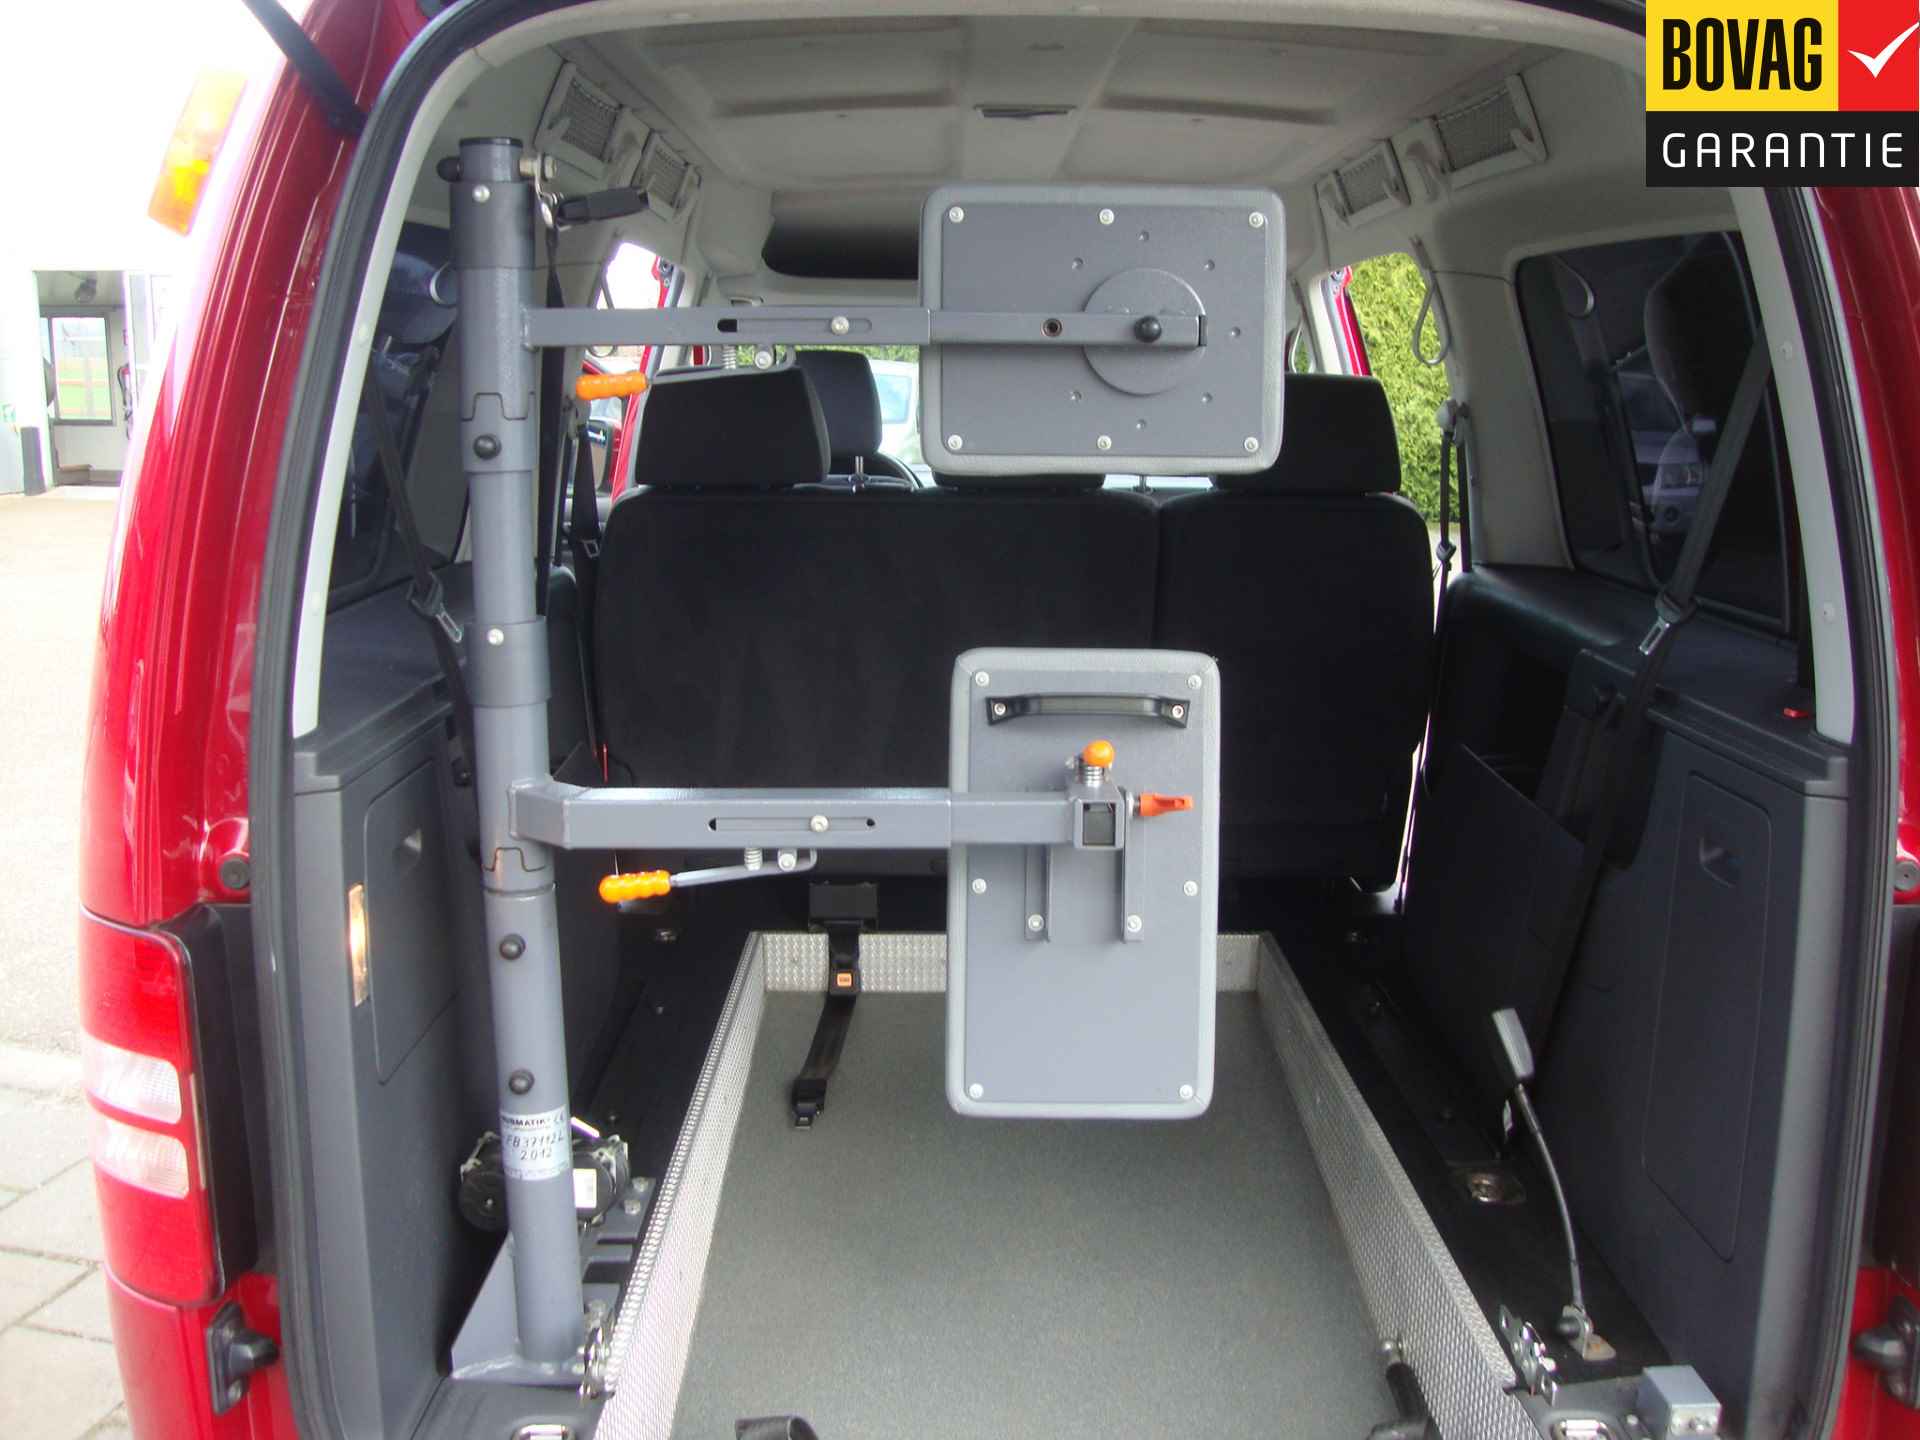 Volkswagen Caddy Maxi 1.2 TSI Trendline Rolstoel / Invalide , 5 pers + 1 rolstoelplaats( Airco,Cruise Control) RIJKLAARPRIJS! - 6/47